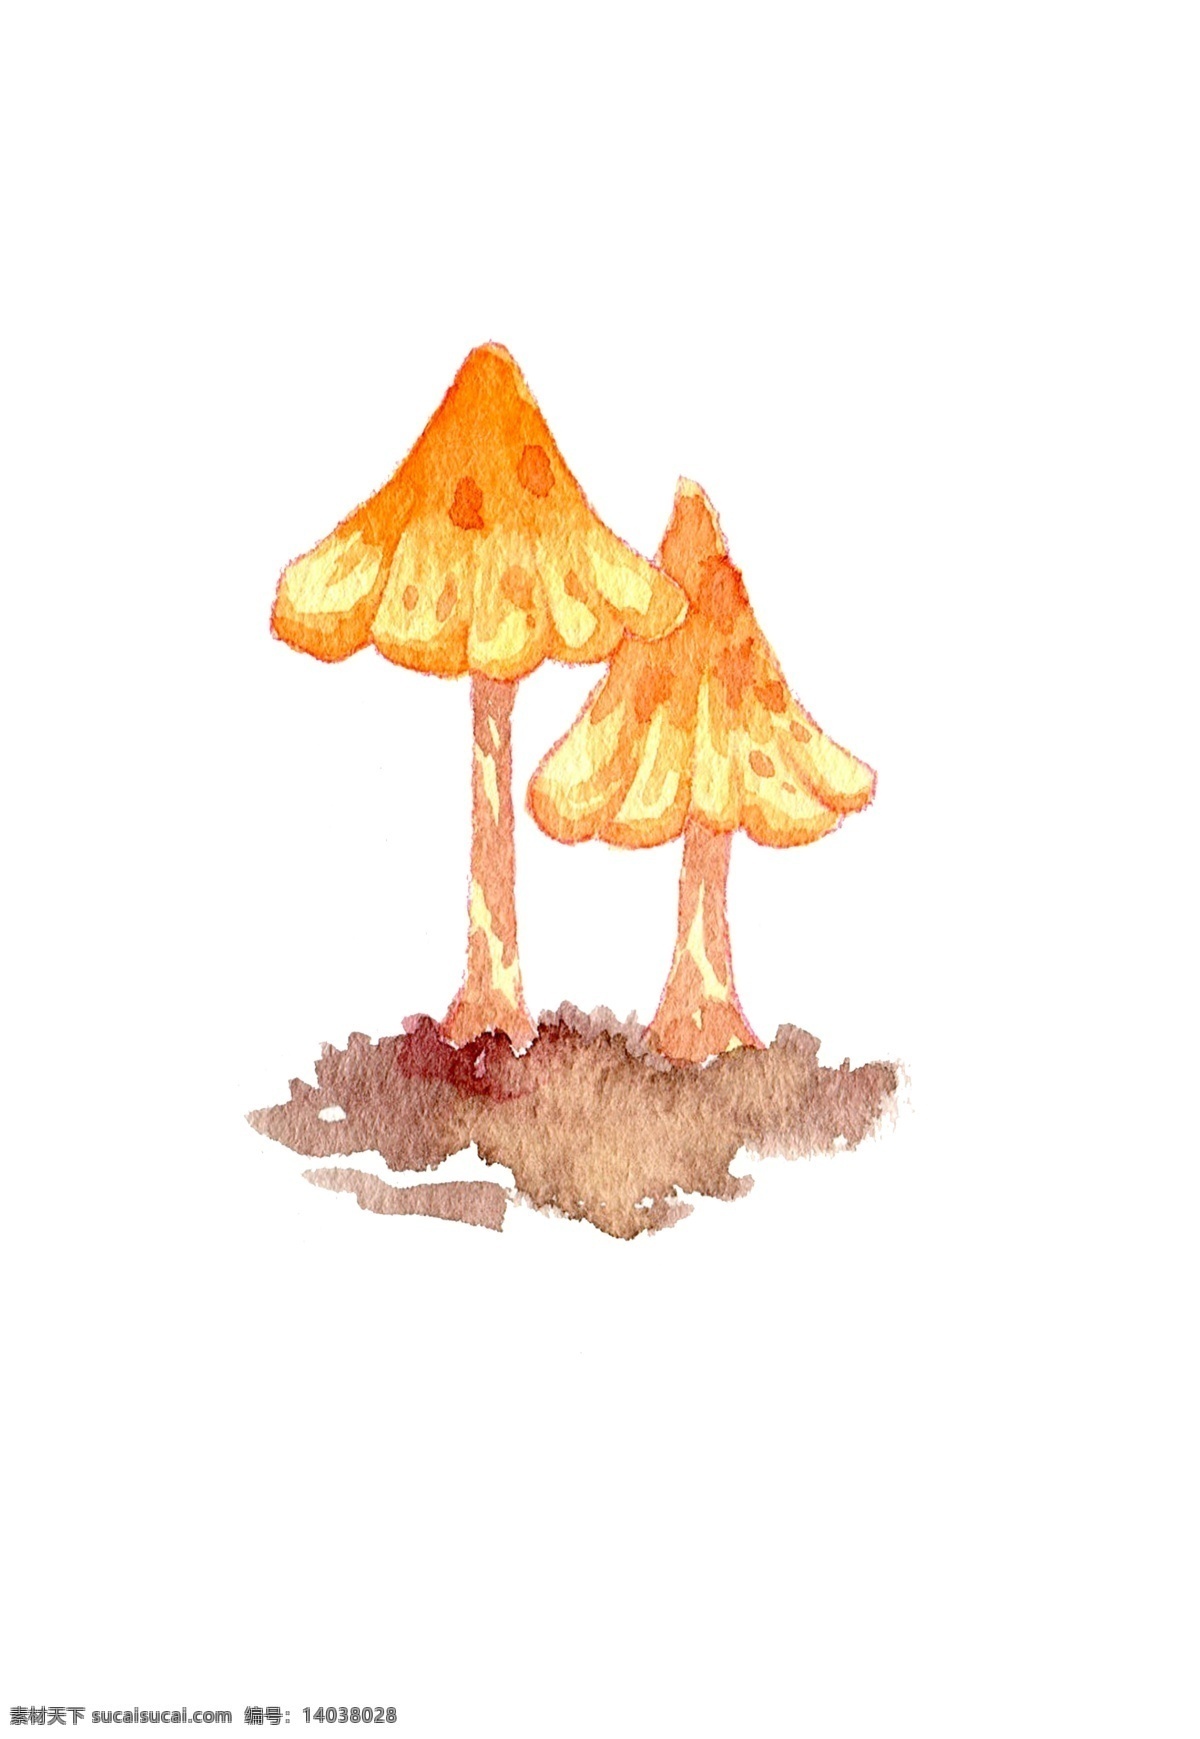 秋季 菇类 菌类 蘑菇 手绘 蘑 水彩 手绘蘑菇 水彩蘑菇 秋日蘑菇 蘑菇插画 食用蘑菇 秋天